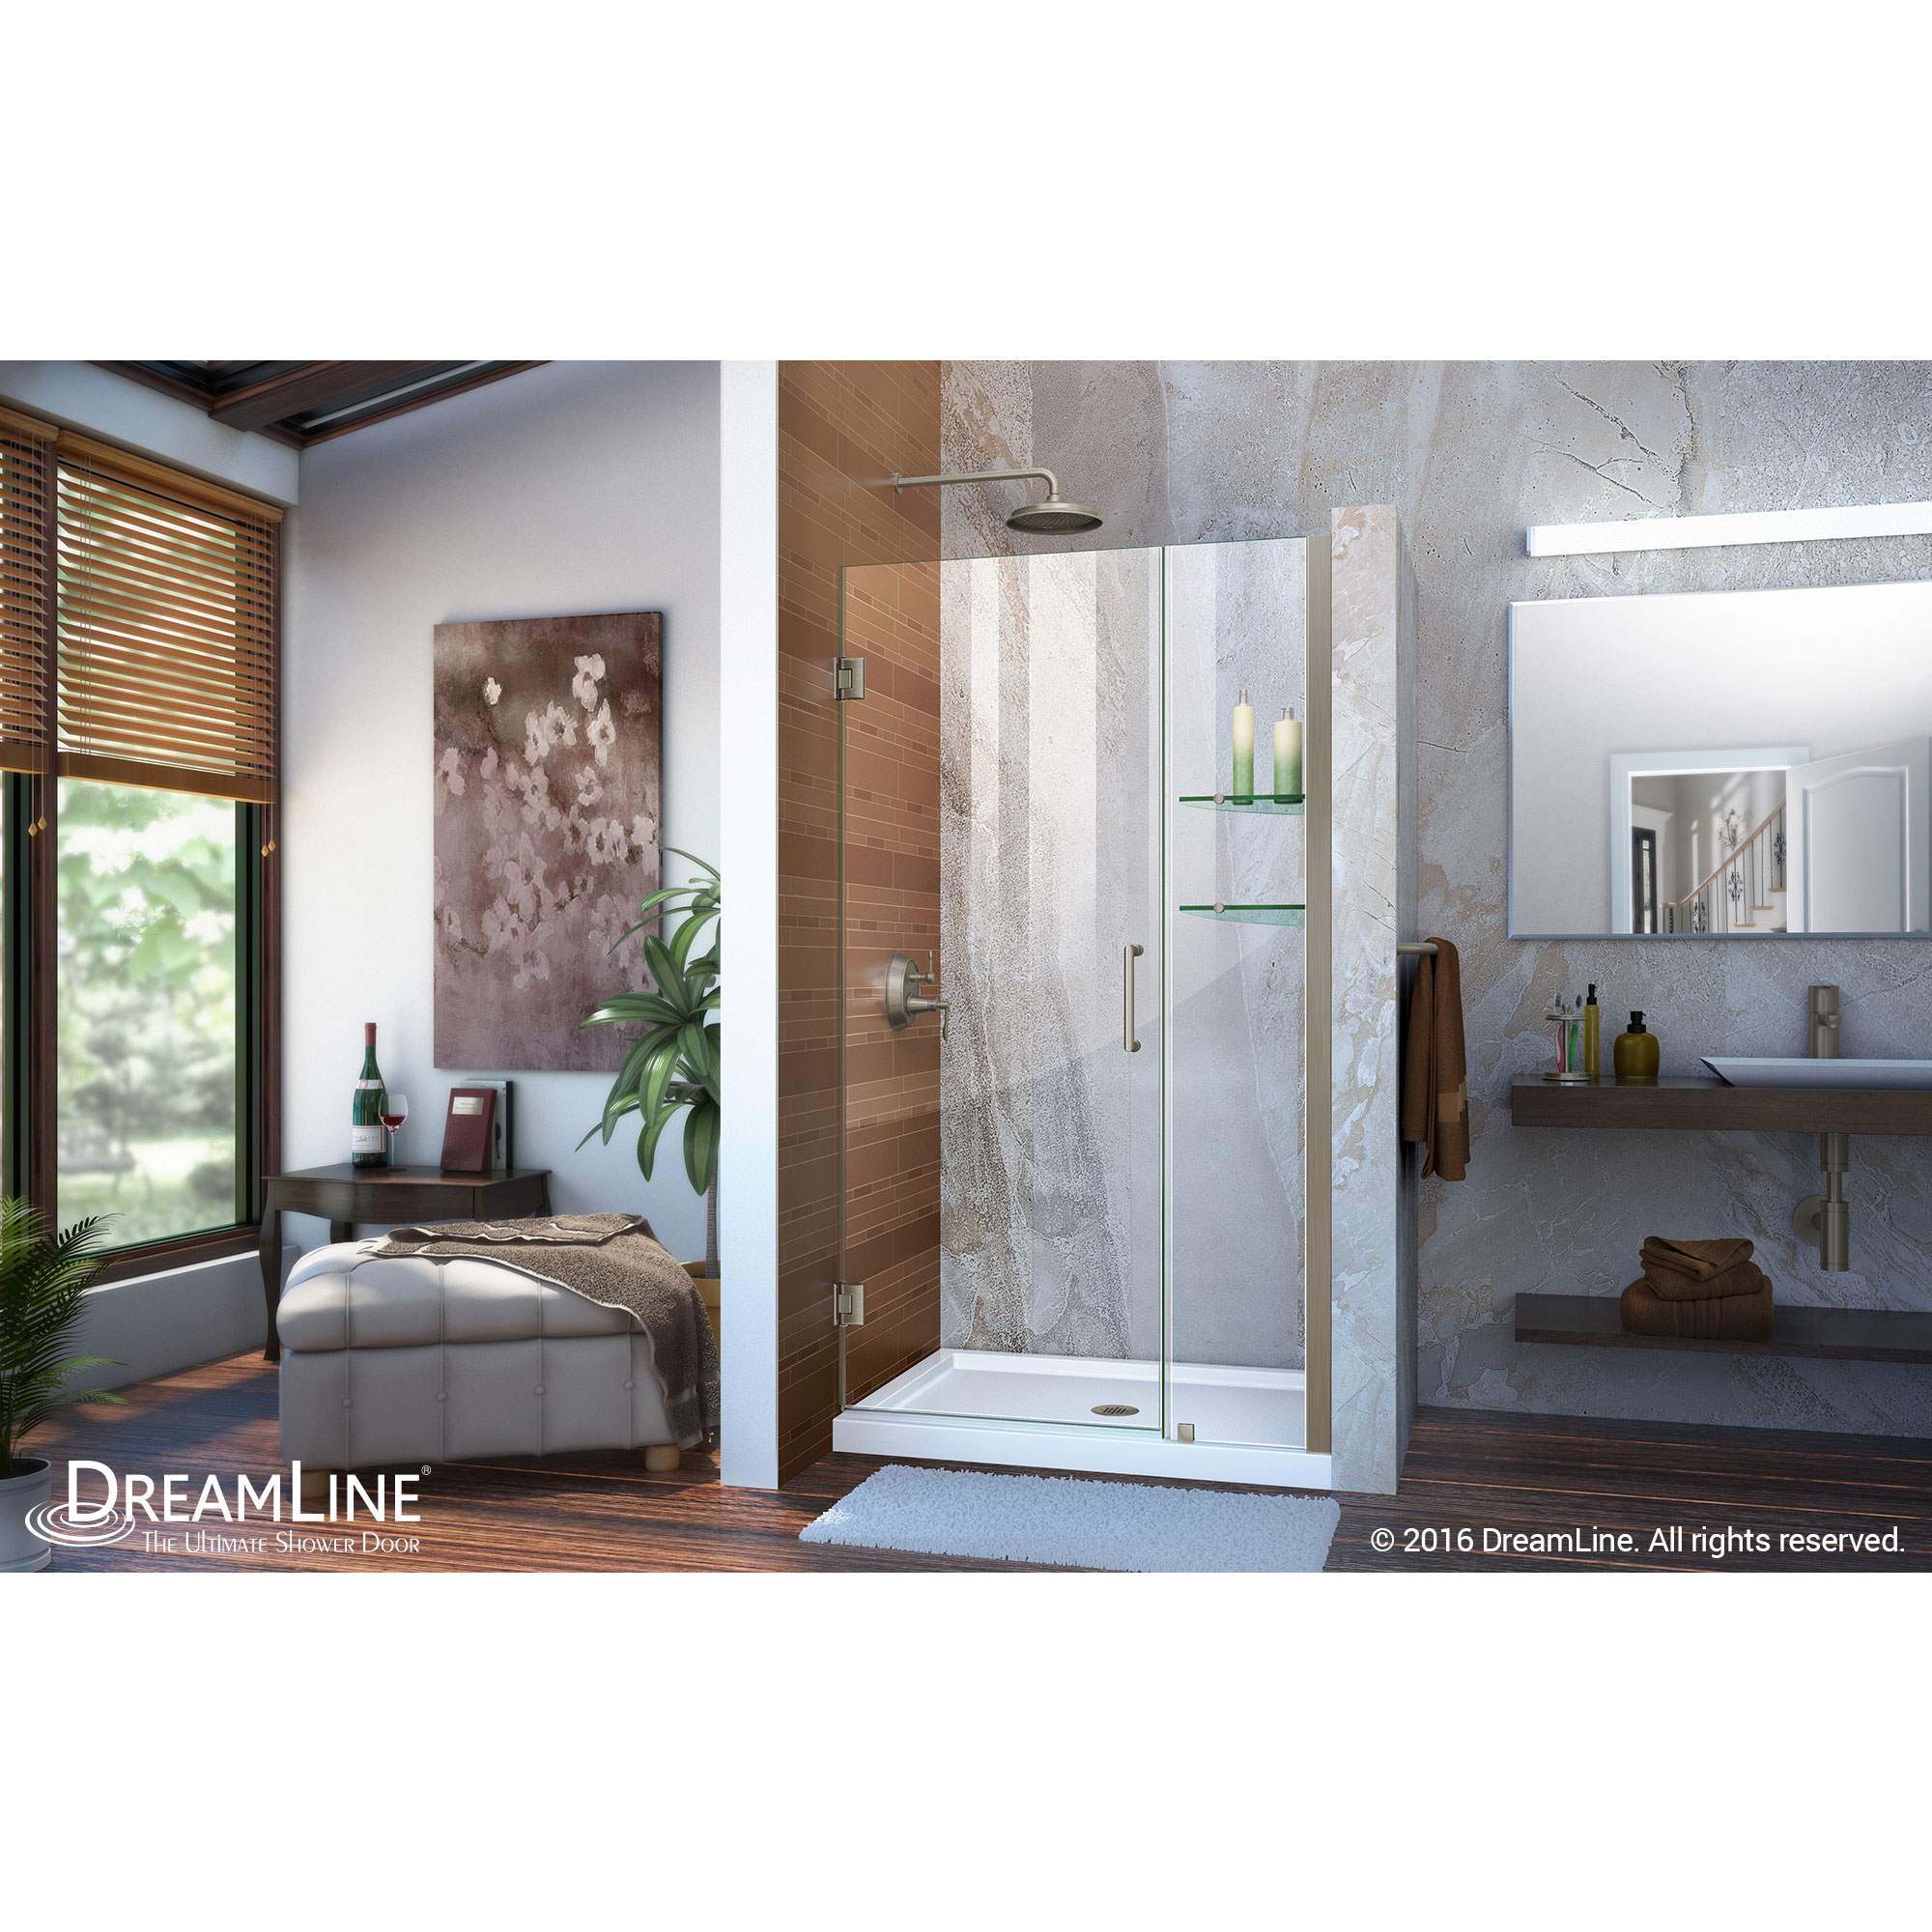 Unidoor 37 to 38" Frameless Hinged Shower Door, Clear 3/8" Glass Door, Brushed Nickel